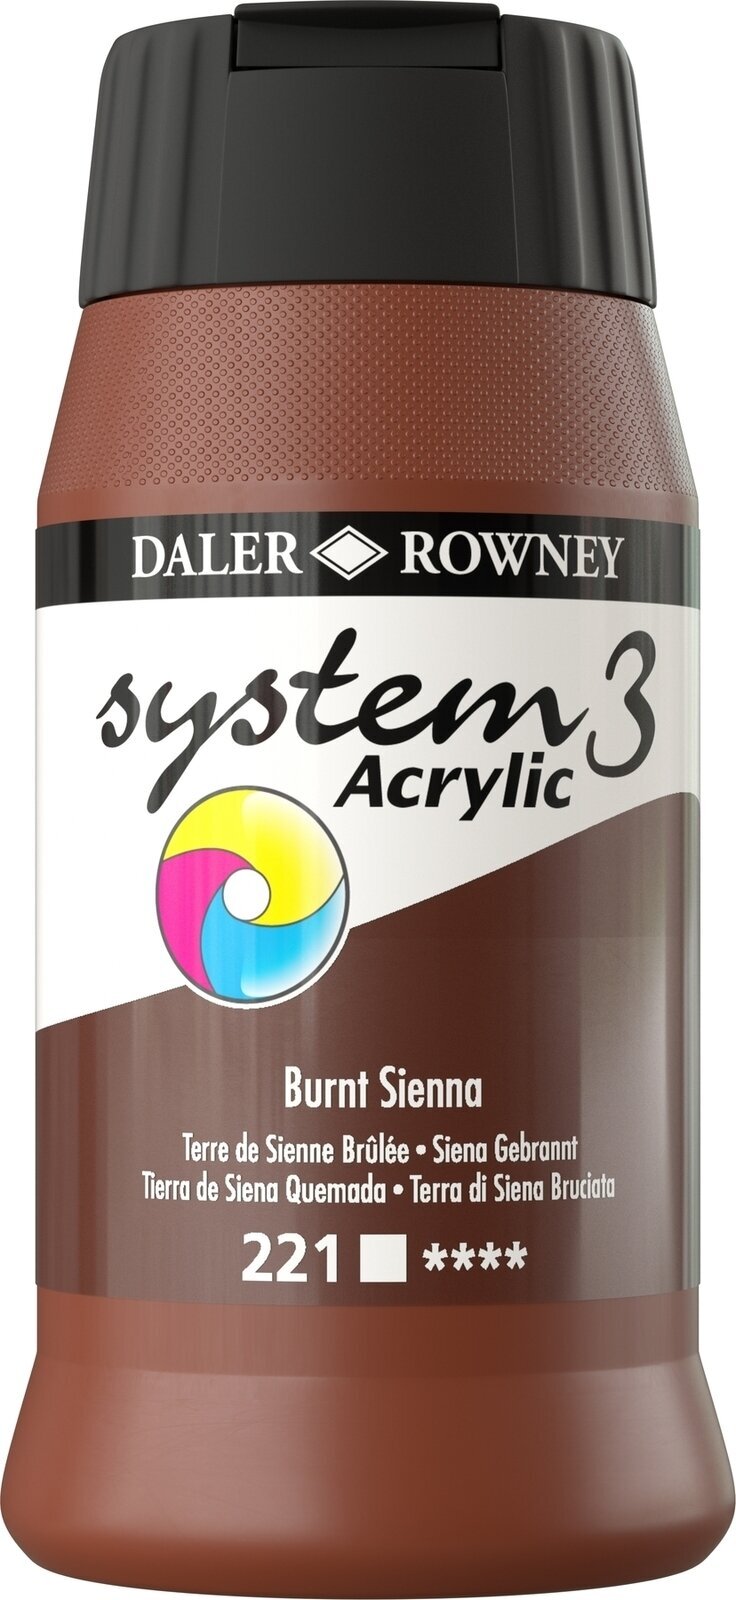 Acrylic Paint Daler Rowney System3 Acrylic Paint Burnt Sienna 500 ml 1 pc